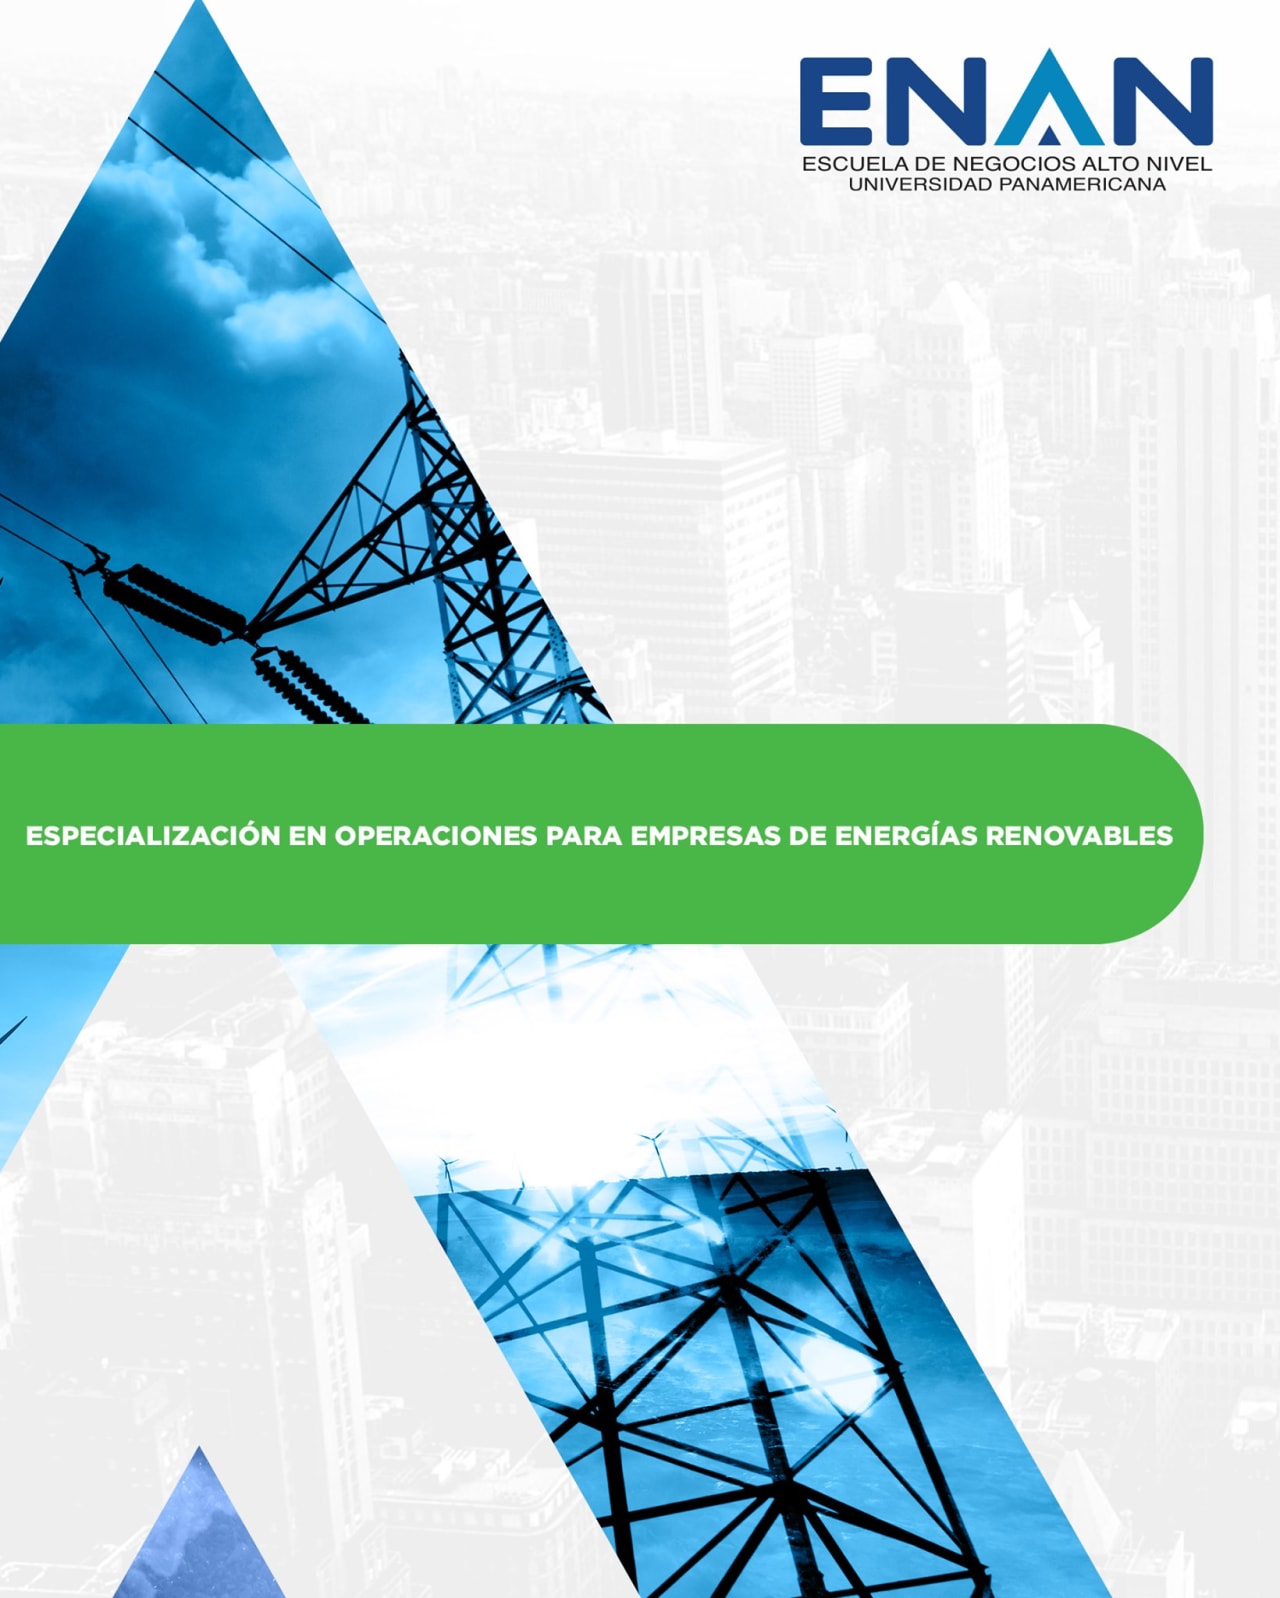 Escuela de Negocios Alto Nivel - Universidad Panamericana de Guatemala Especialización en Operaciones para Empresas de Energías Renovables